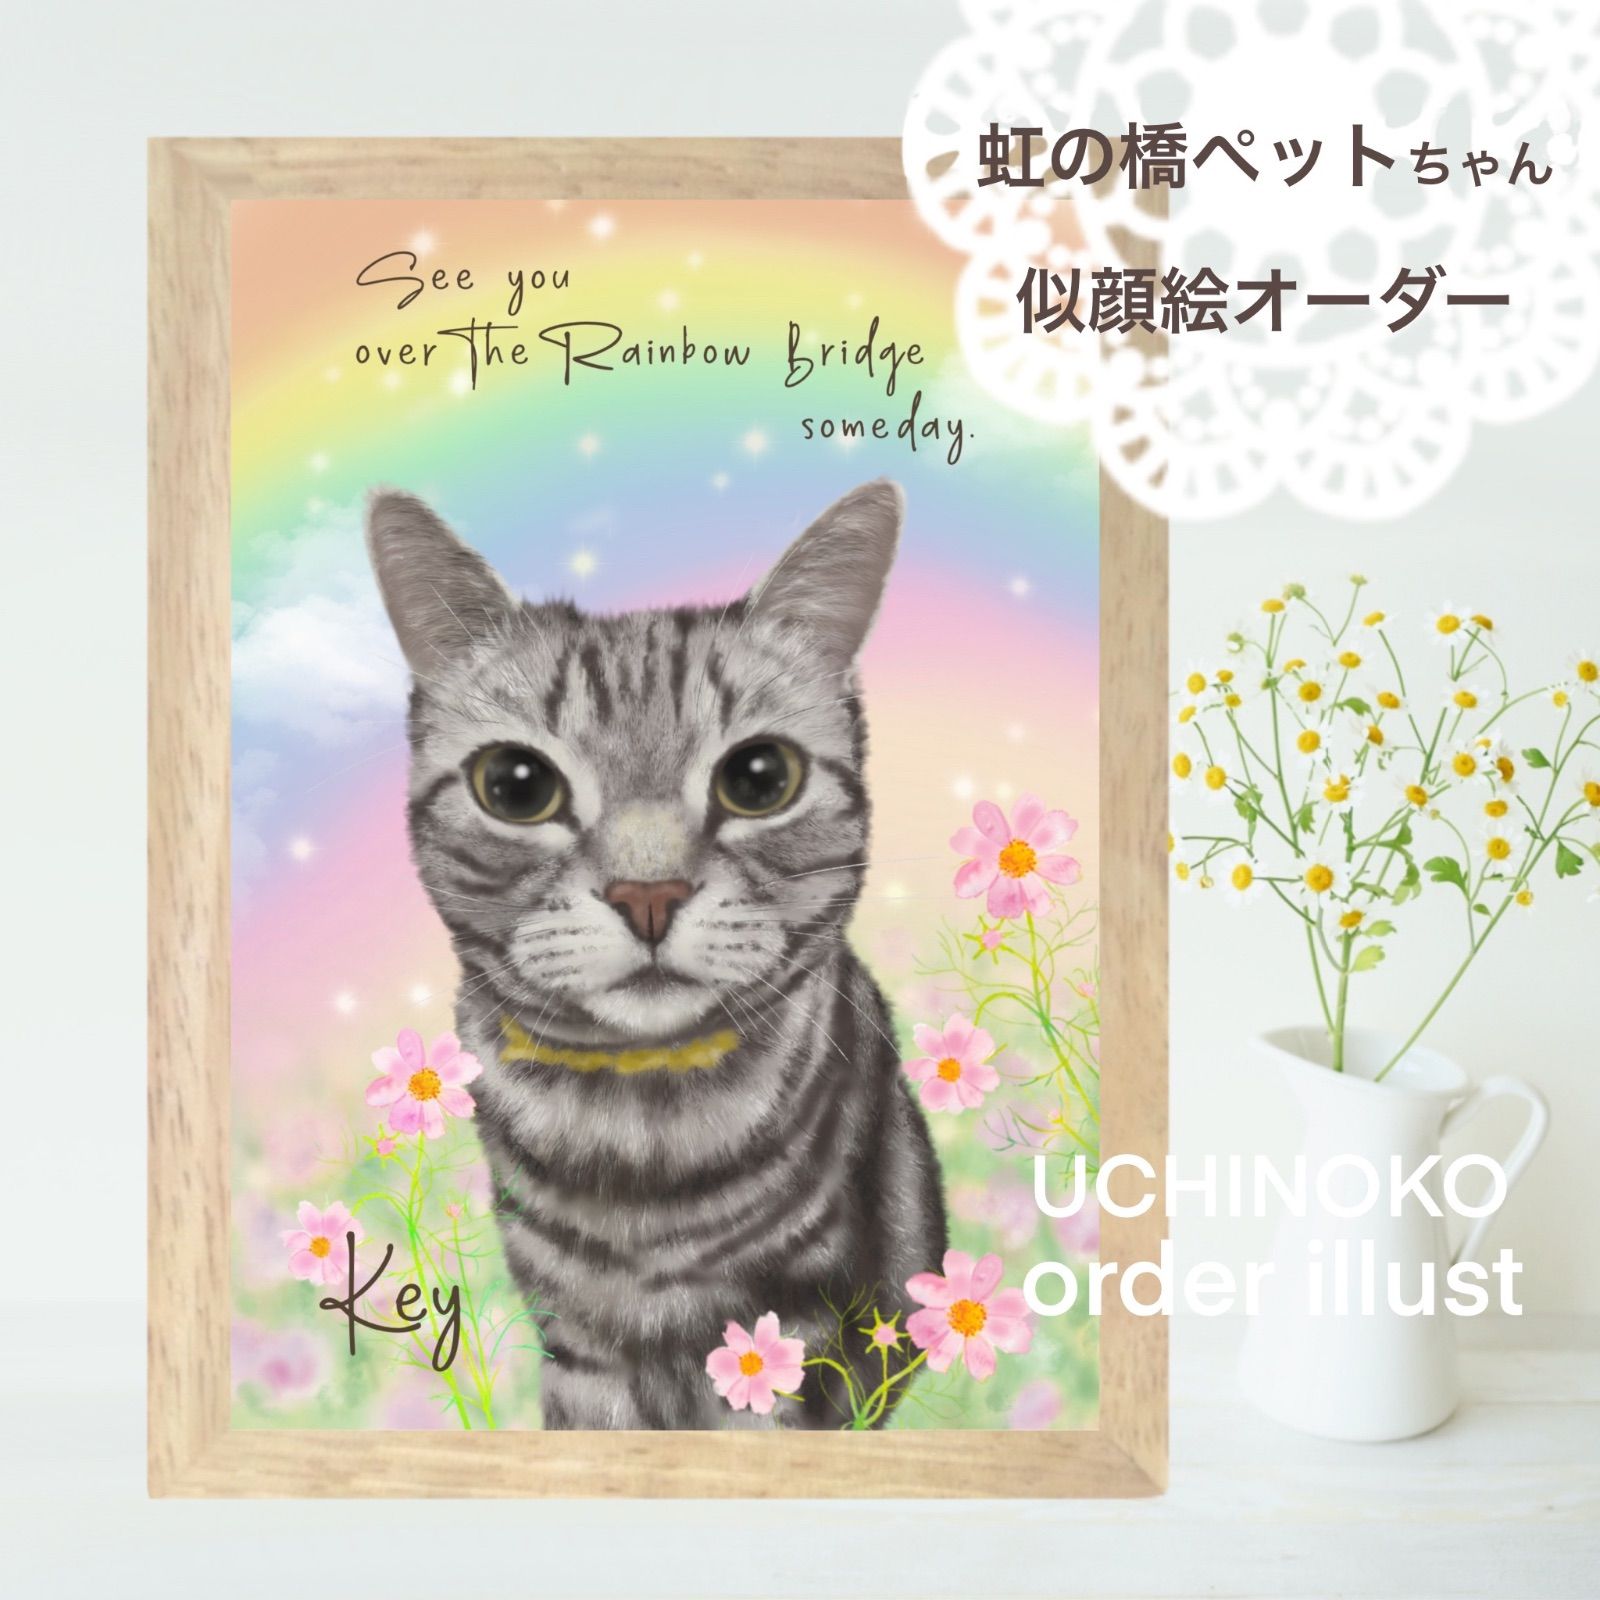 ペット似顔絵 イラスト オーダー 虹の橋 メモリアル UCHINOKO 2L印刷 